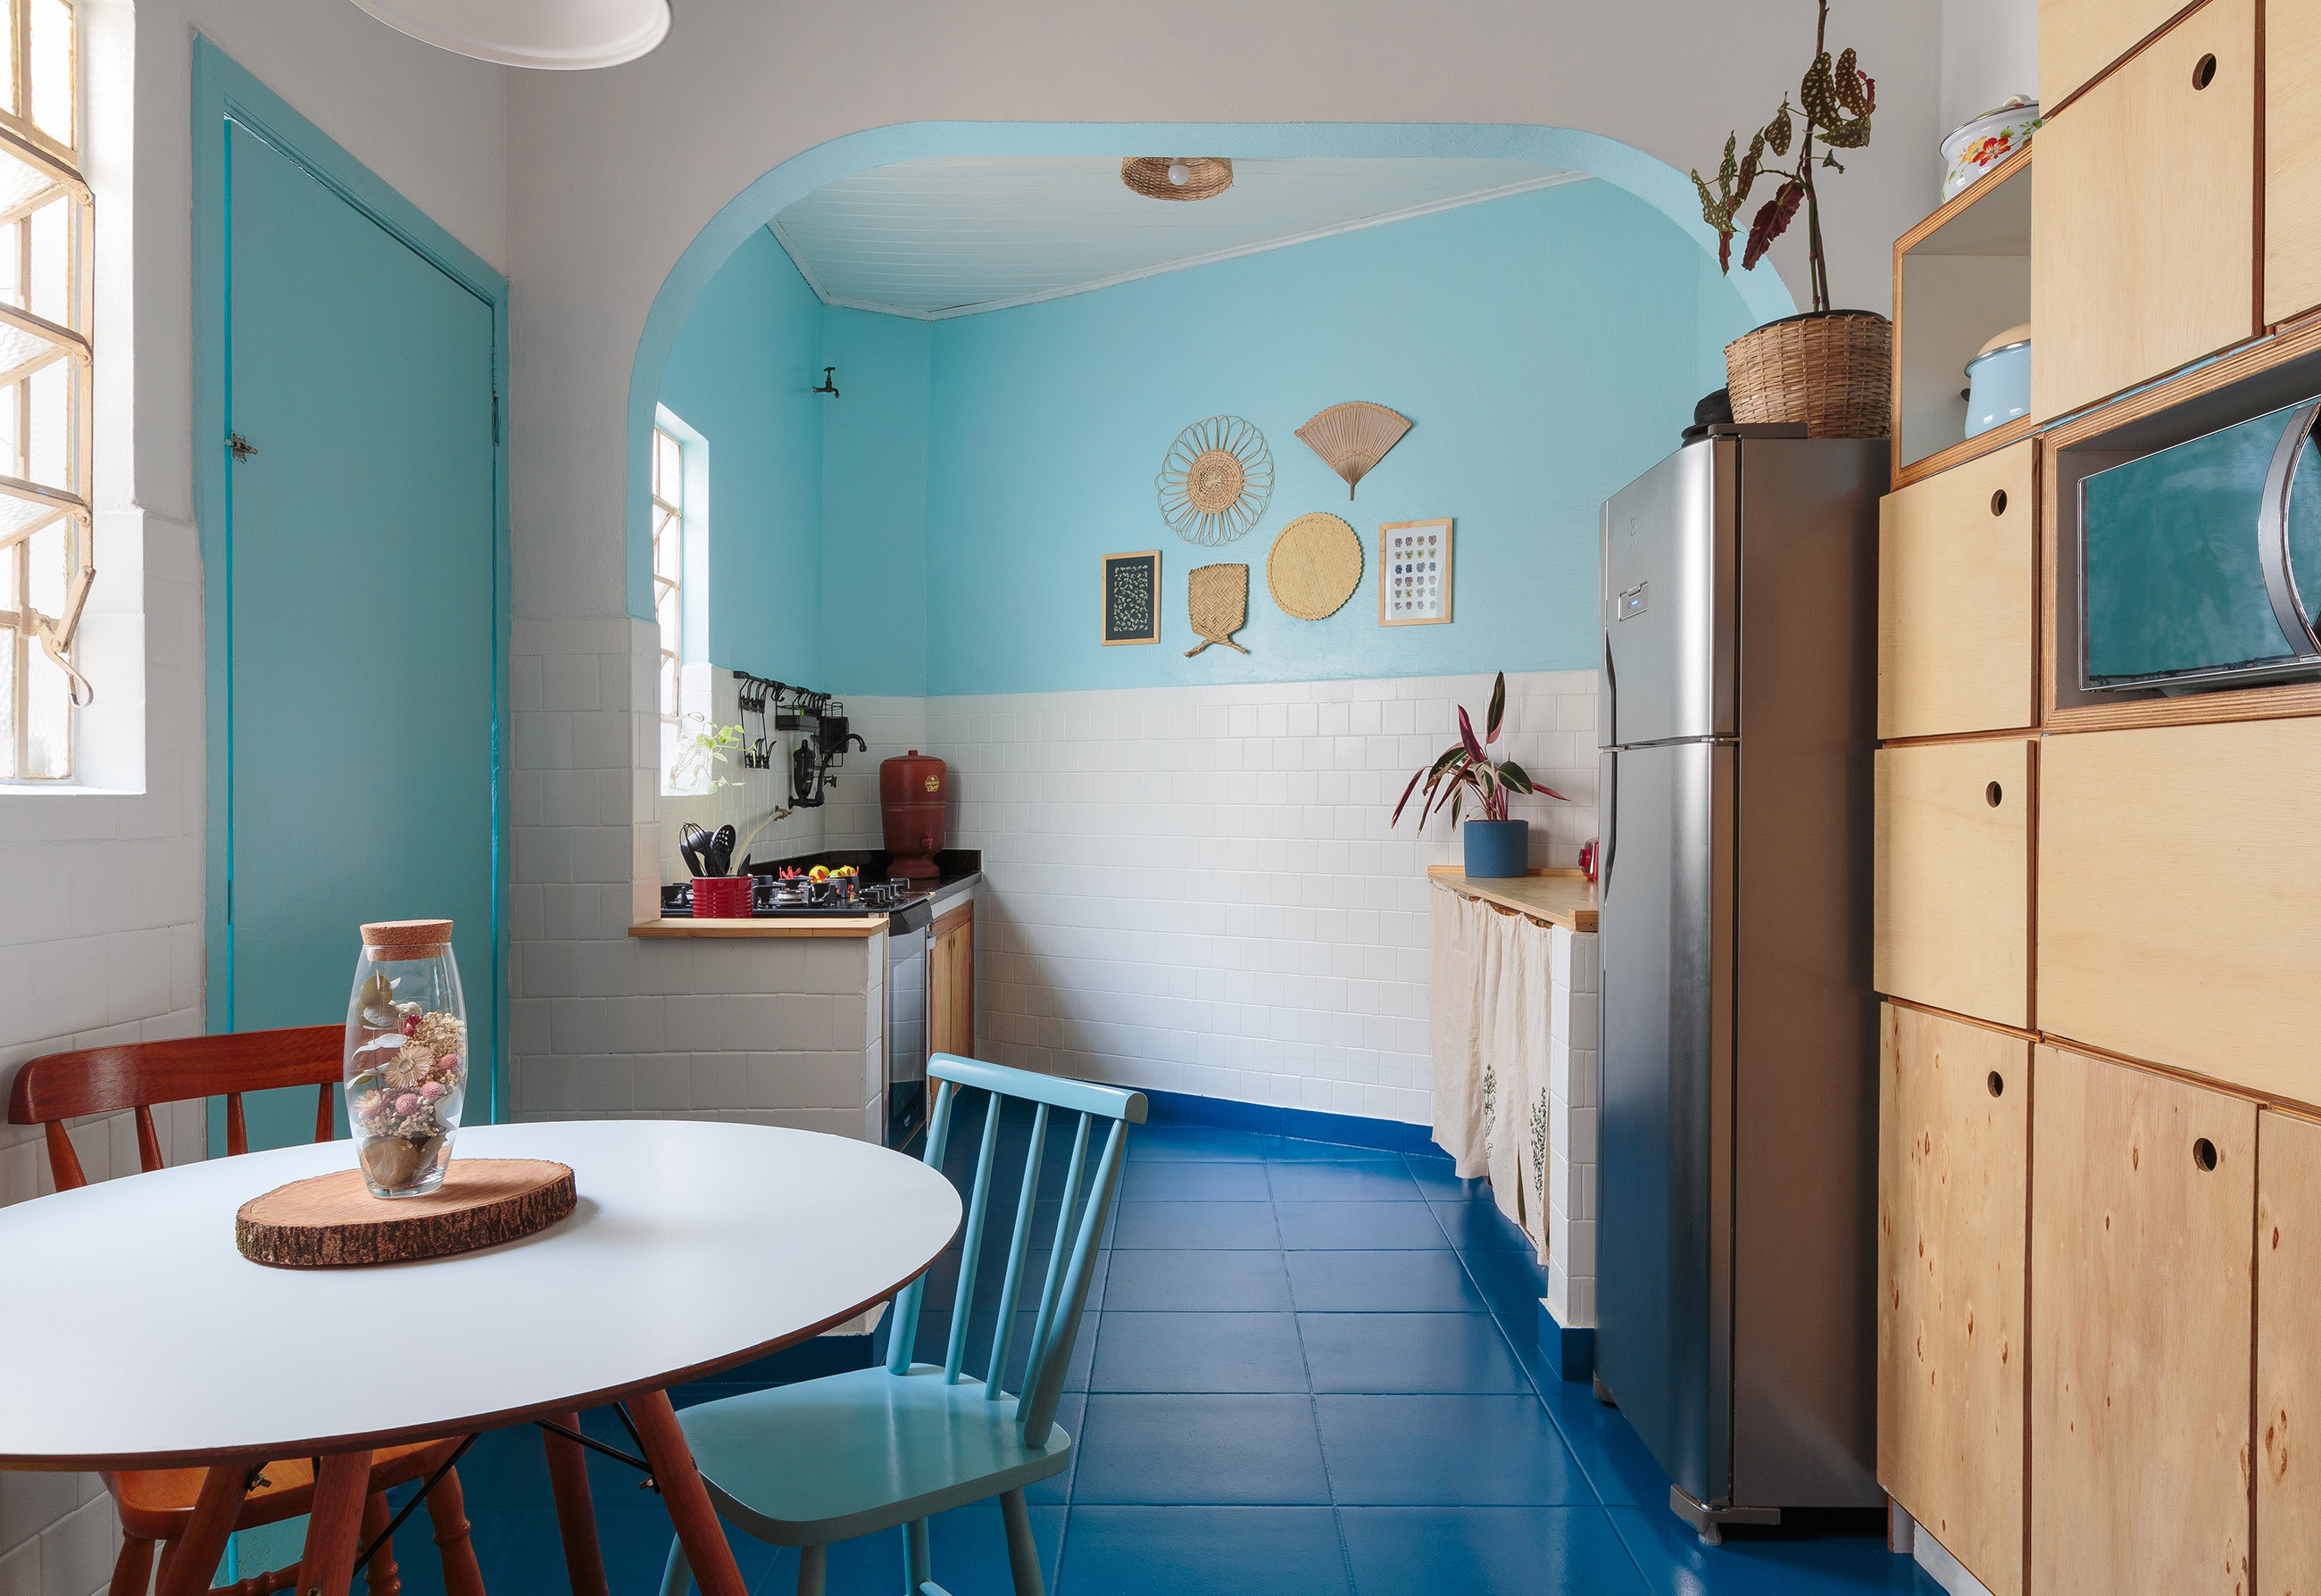 Decoracão de cozinha colorida com piso de azulejos pintados de azul